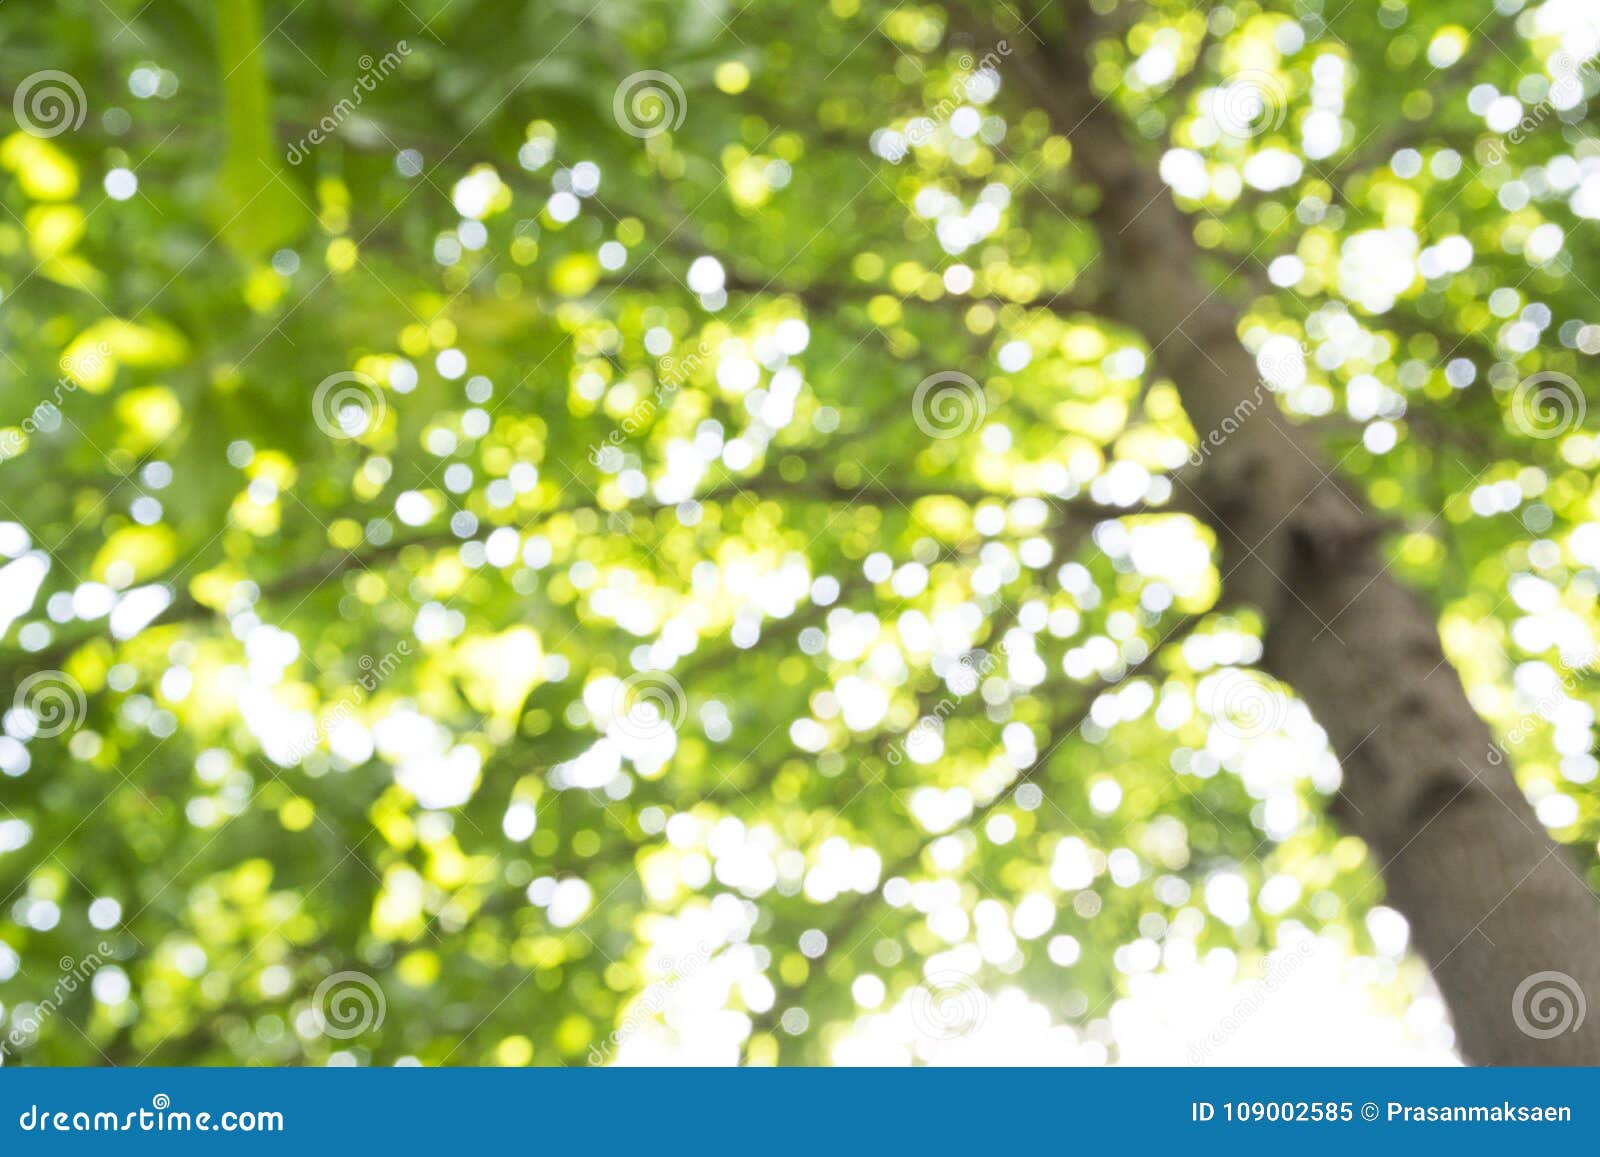 Loài cây xanh tươi là biểu tượng cho sự sống và môi trường trong lành. Chúng tôi giới thiệu đến bạn những bức ảnh về lá cây đầy ý nghĩa, tạo ra một khung cảnh đẹp mắt và ý nghĩa về sức sống và bảo vệ môi trường. Hãy cùng nhau khám phá chúng ngay.